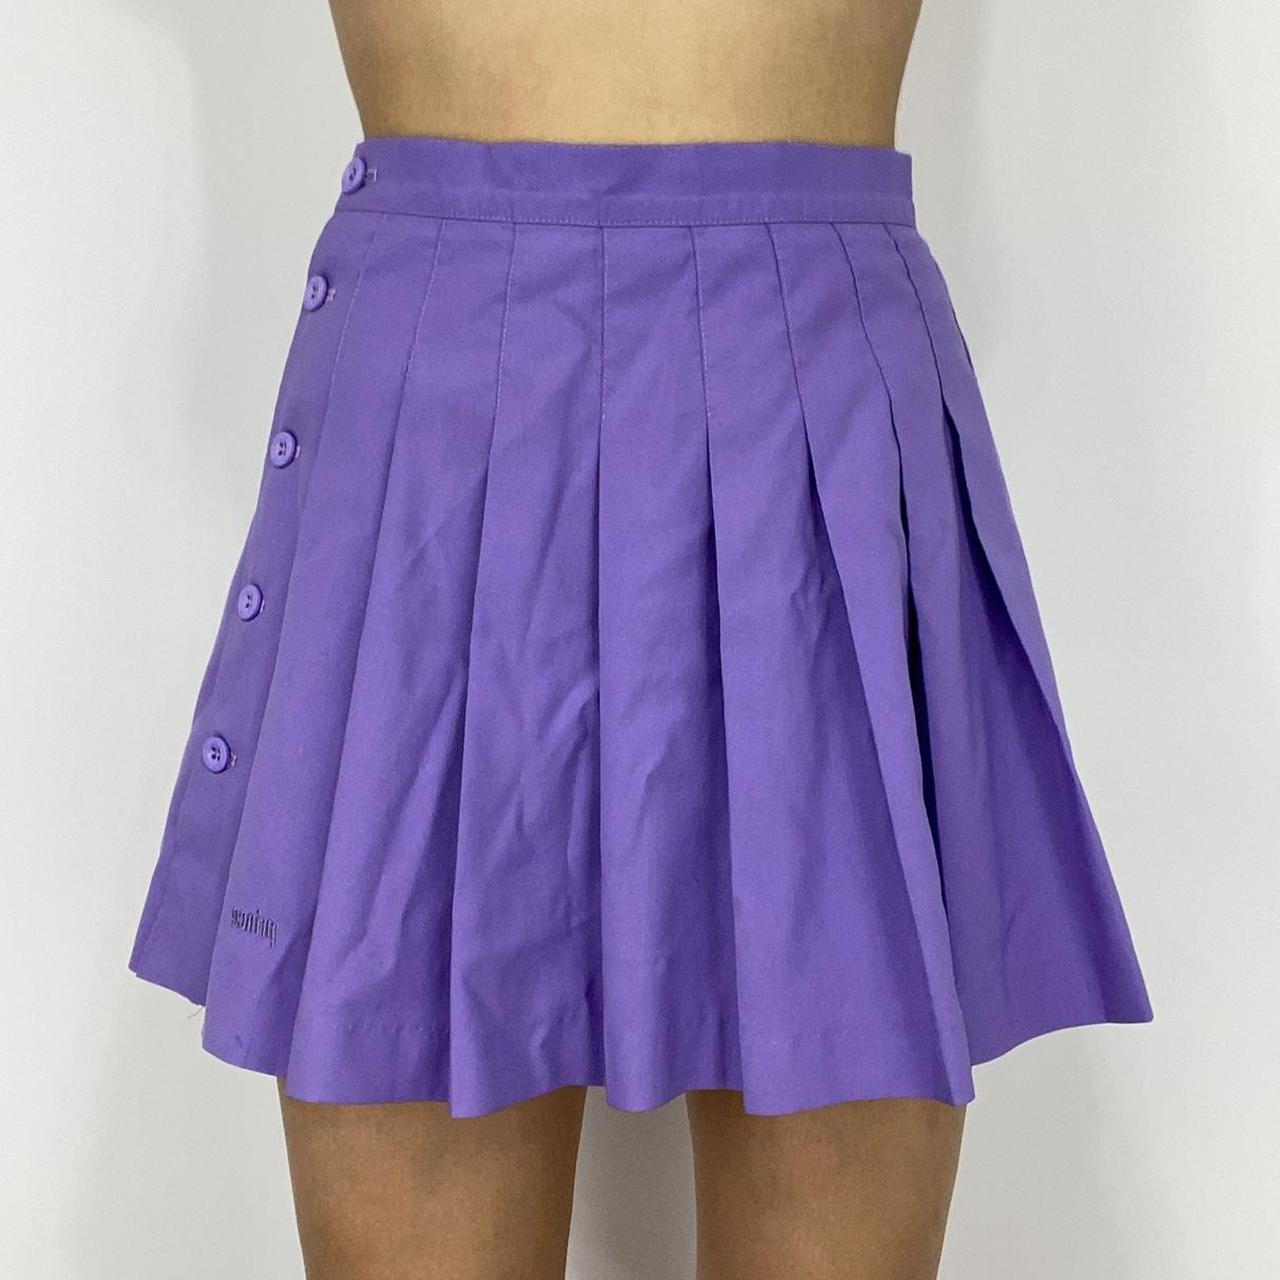 Product Image 2 - Purple tennis skirt 

Purple tennis